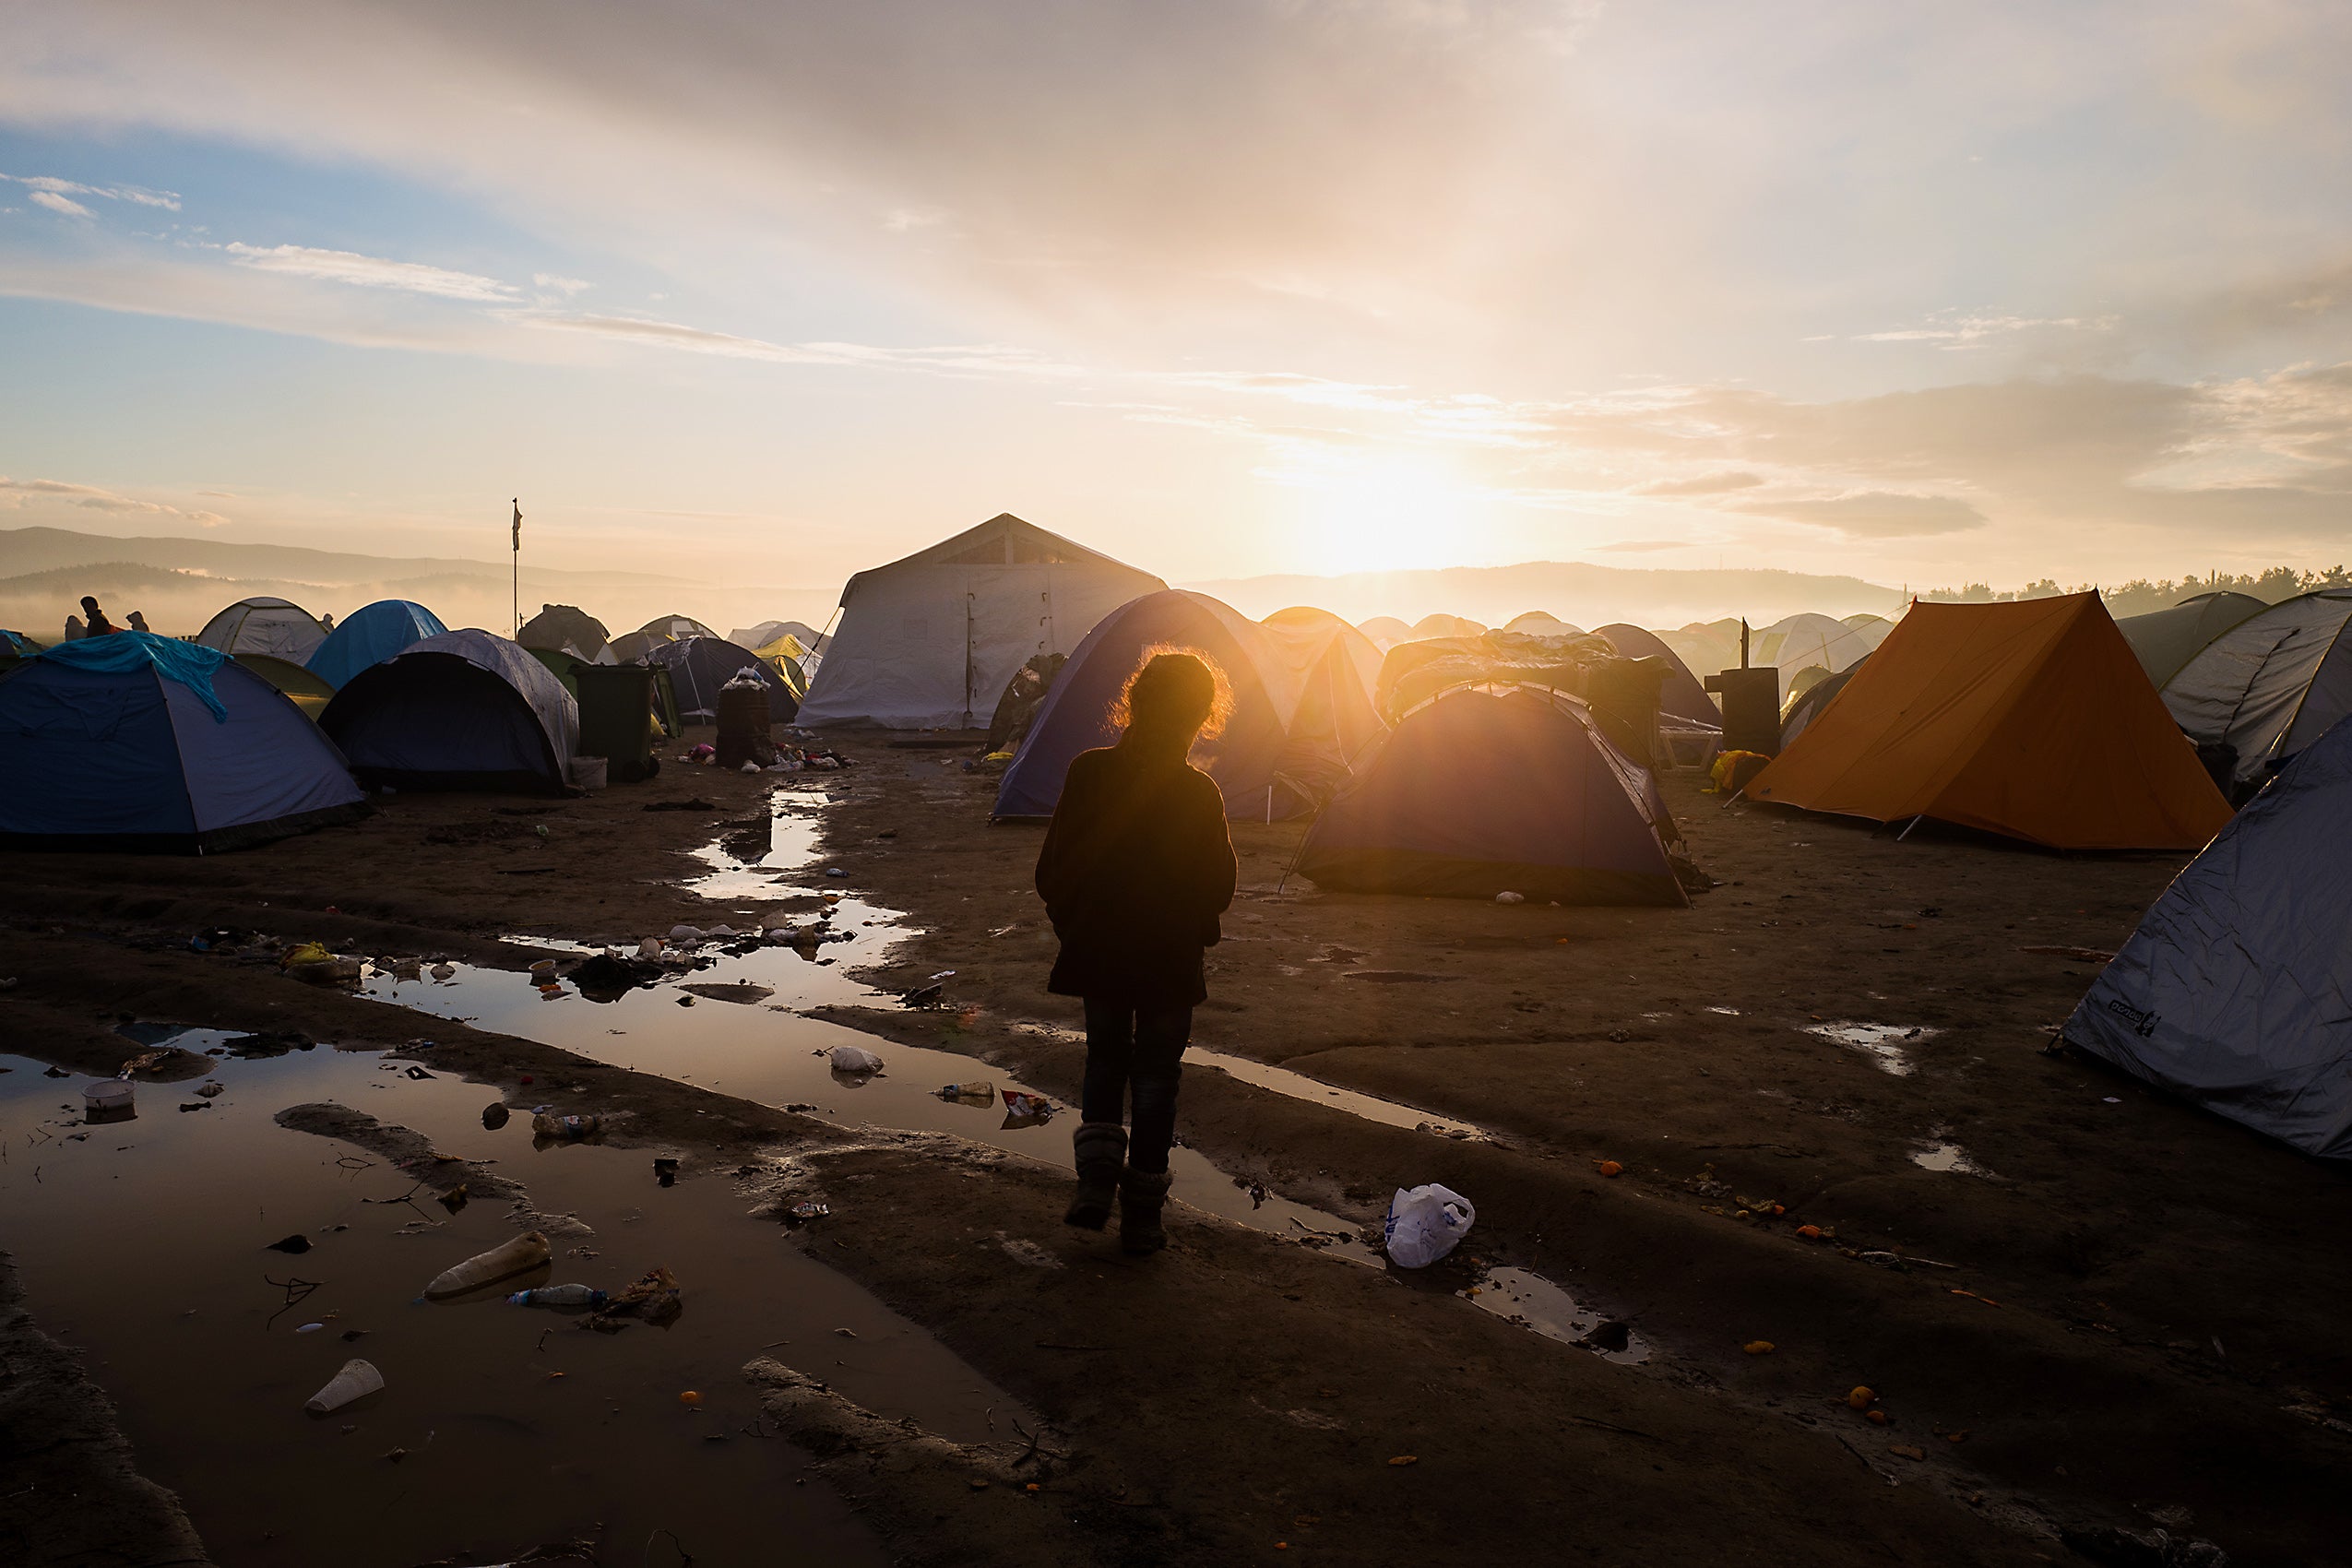 Refugee kid among tents